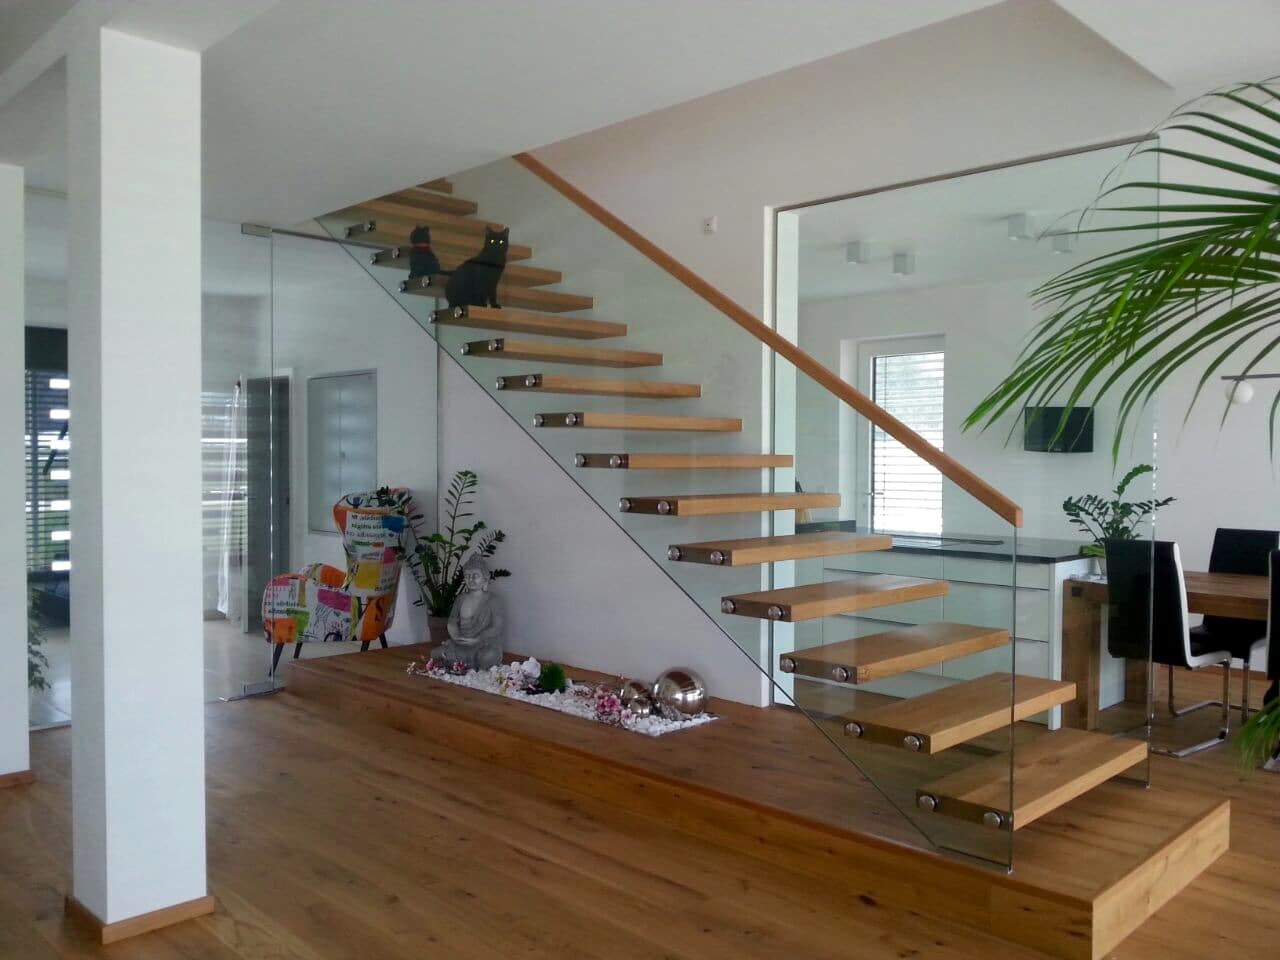 Wohnraum mit moderner Treppe von Hausjell, Purrer & Stockinger aus Holz und Glas.